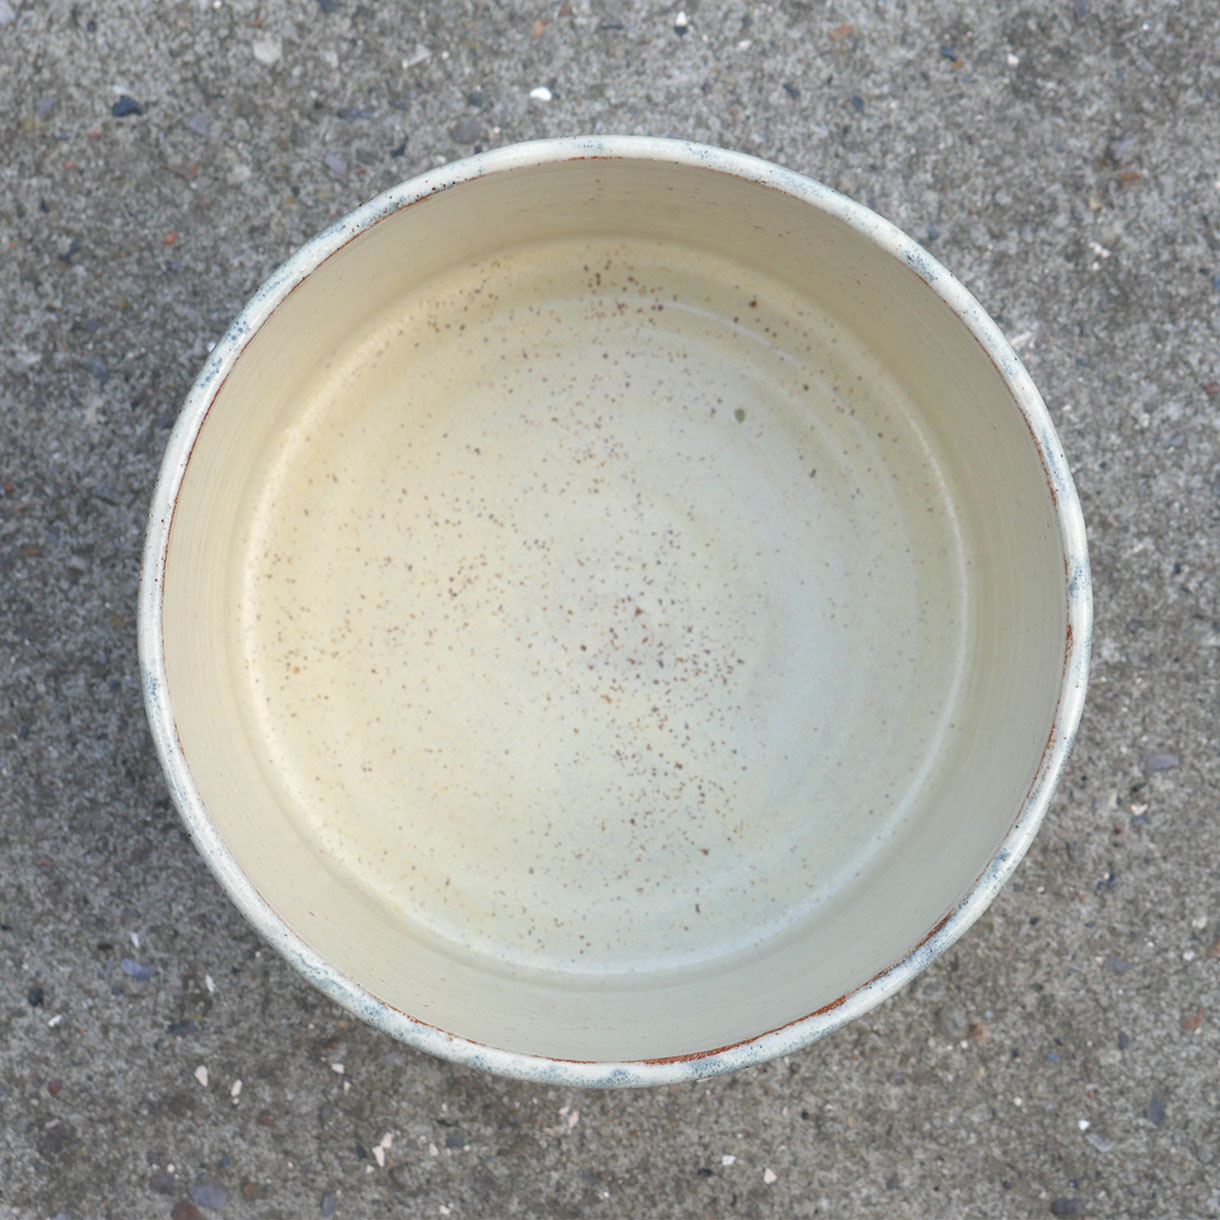 Keramik cylinder krukke skabt af Pernille Buch, på billedet ses krukken oppefra.